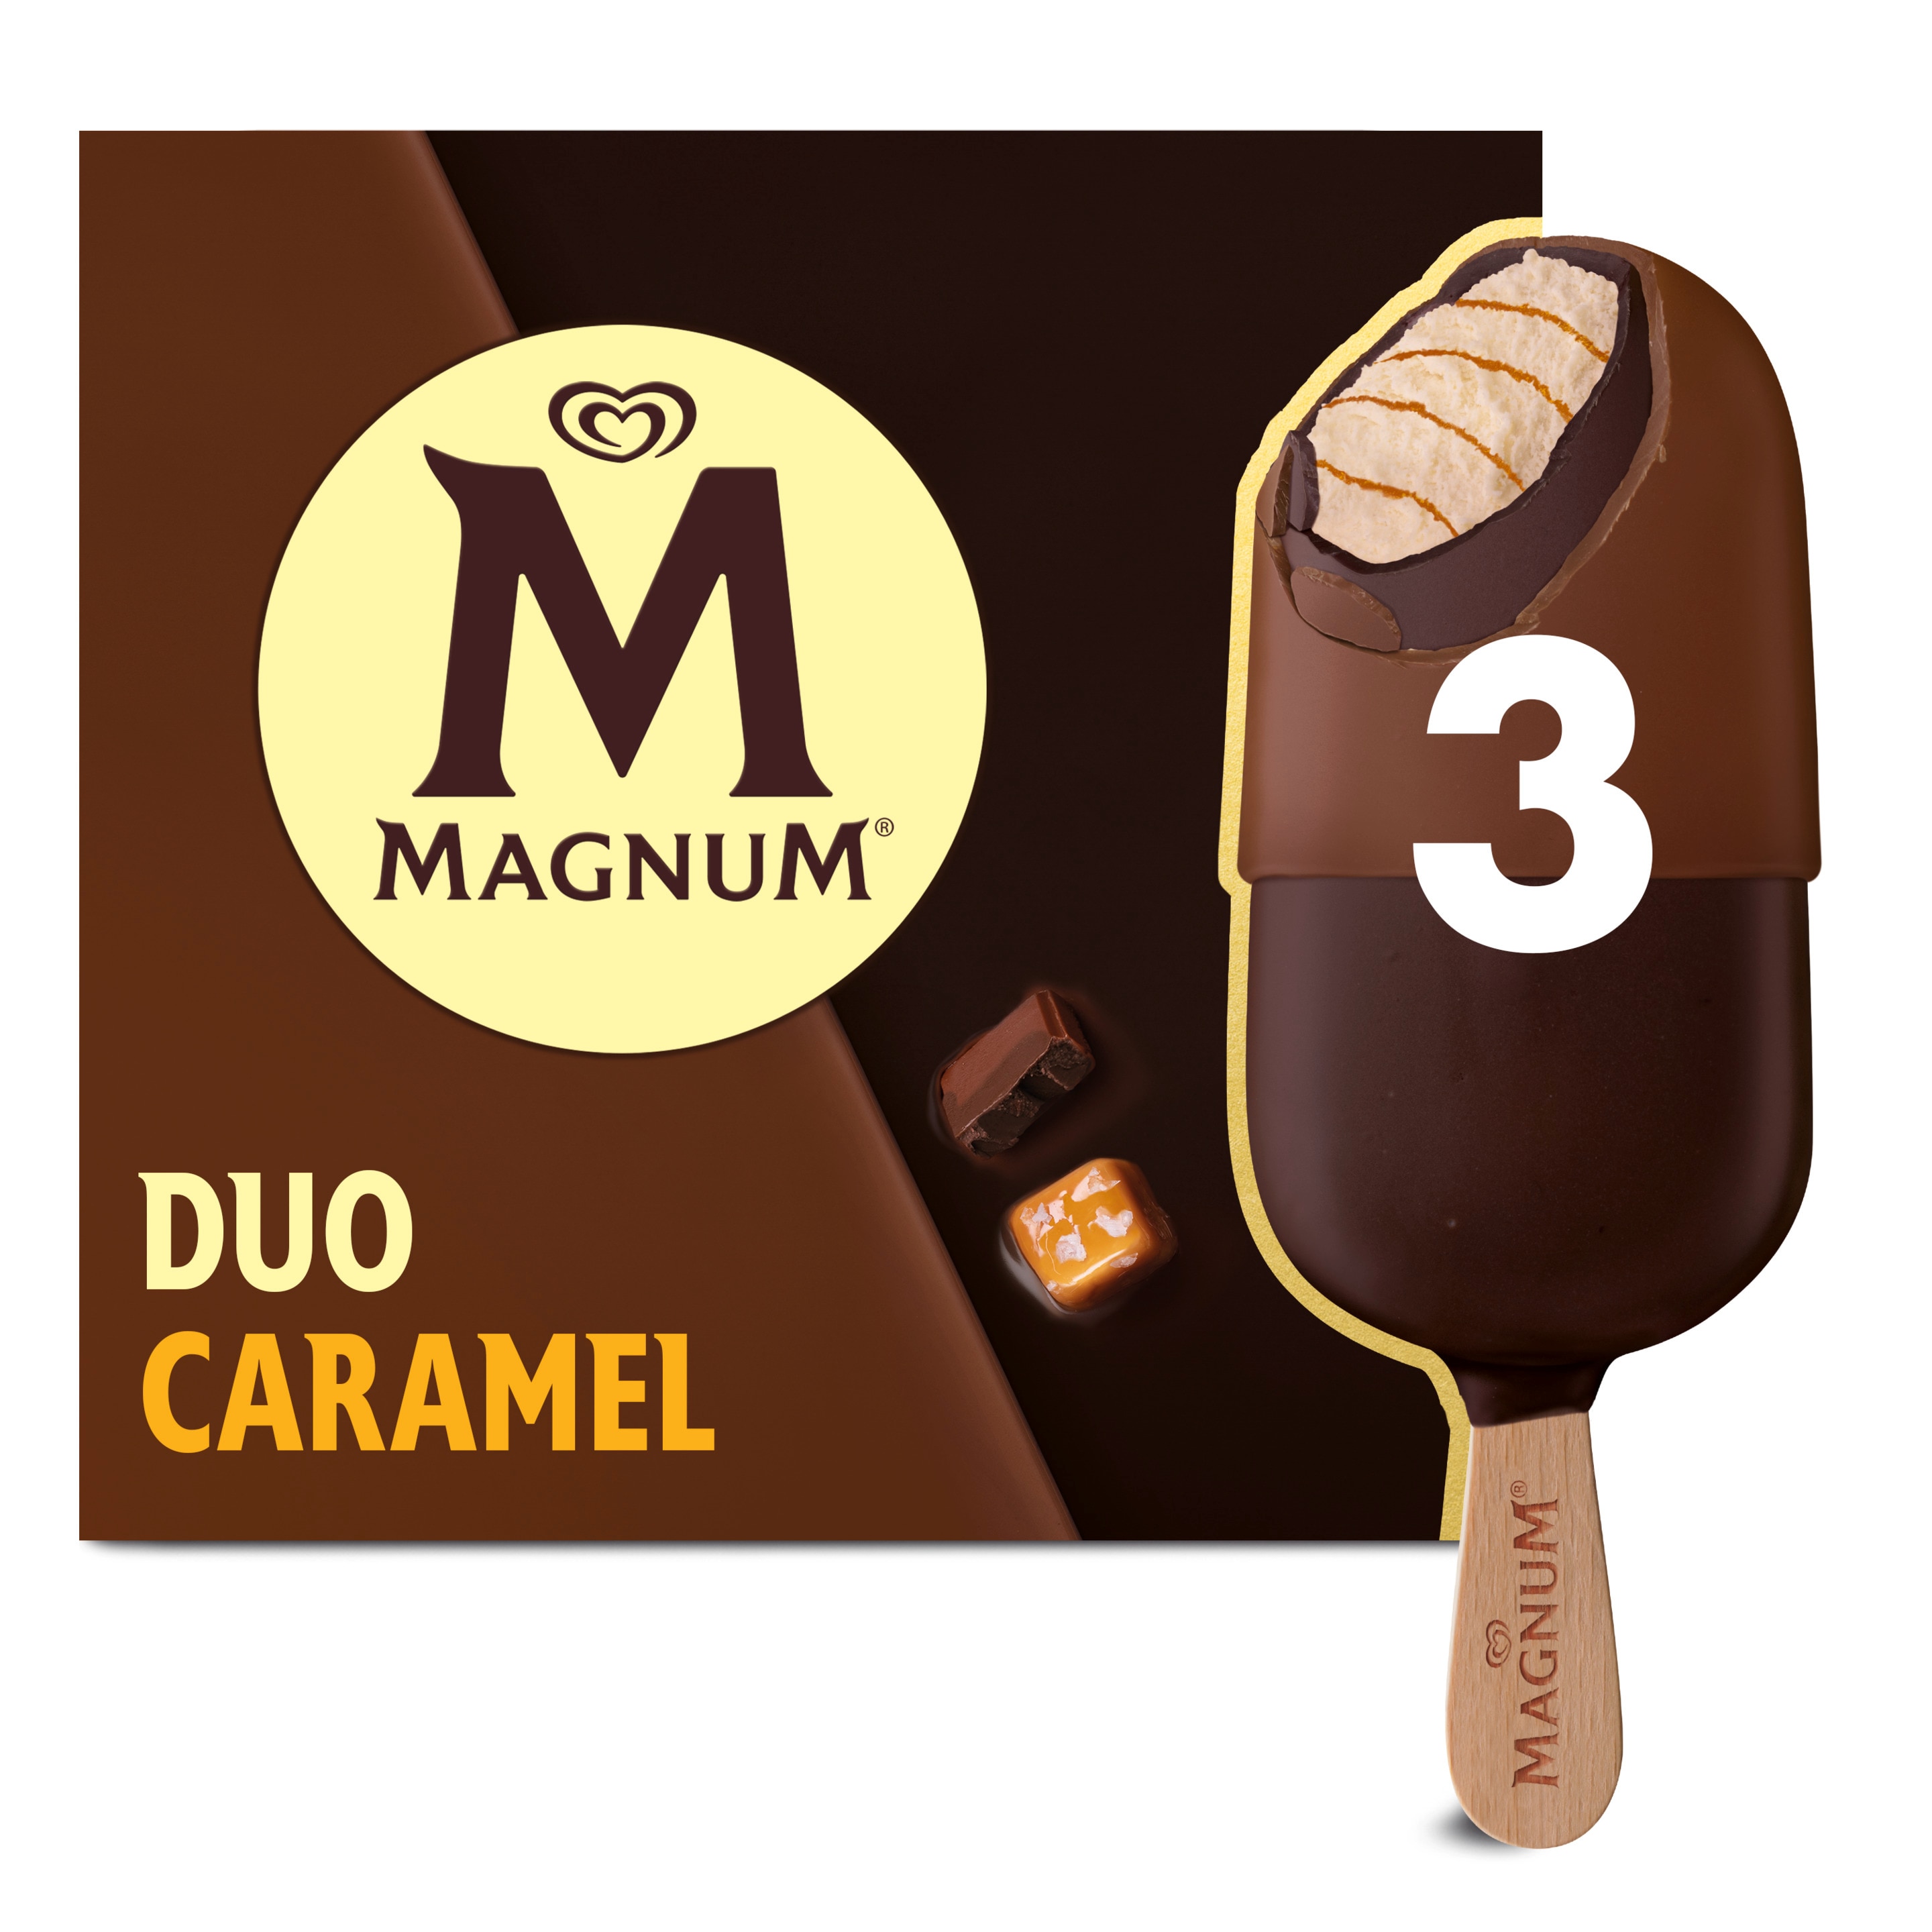 MG Caramel Duet